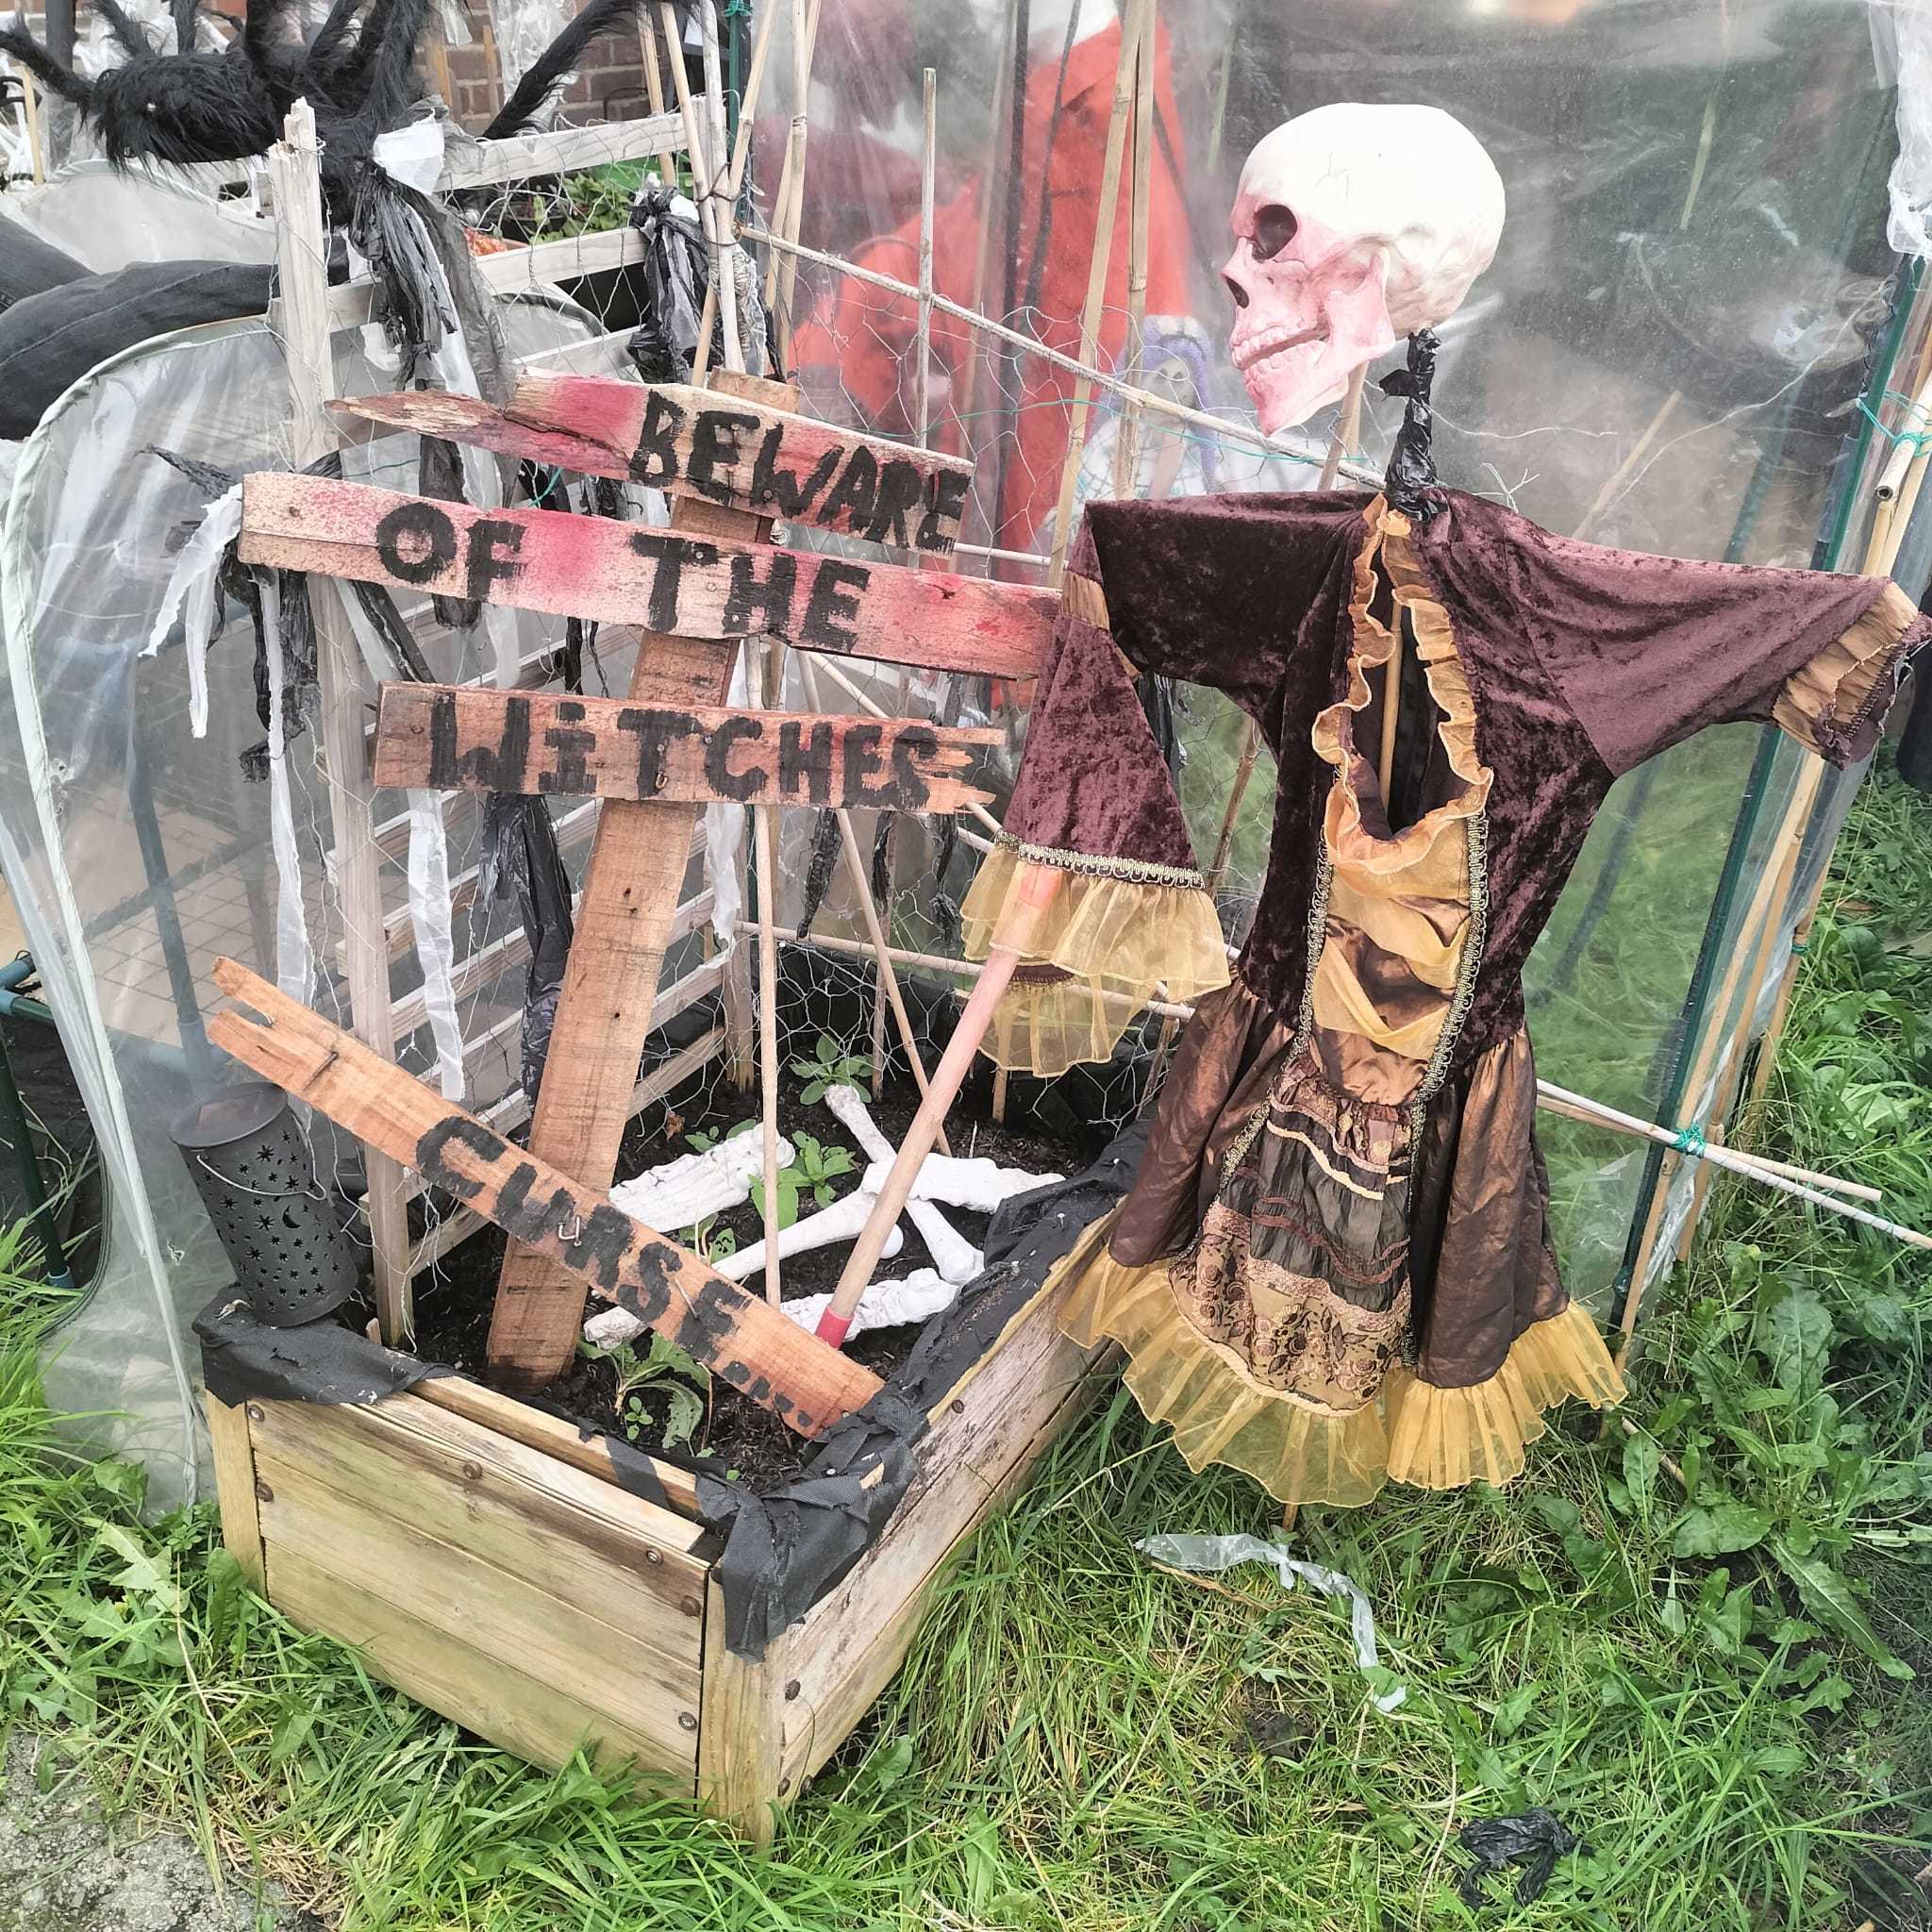 Skeletons haunt the garden